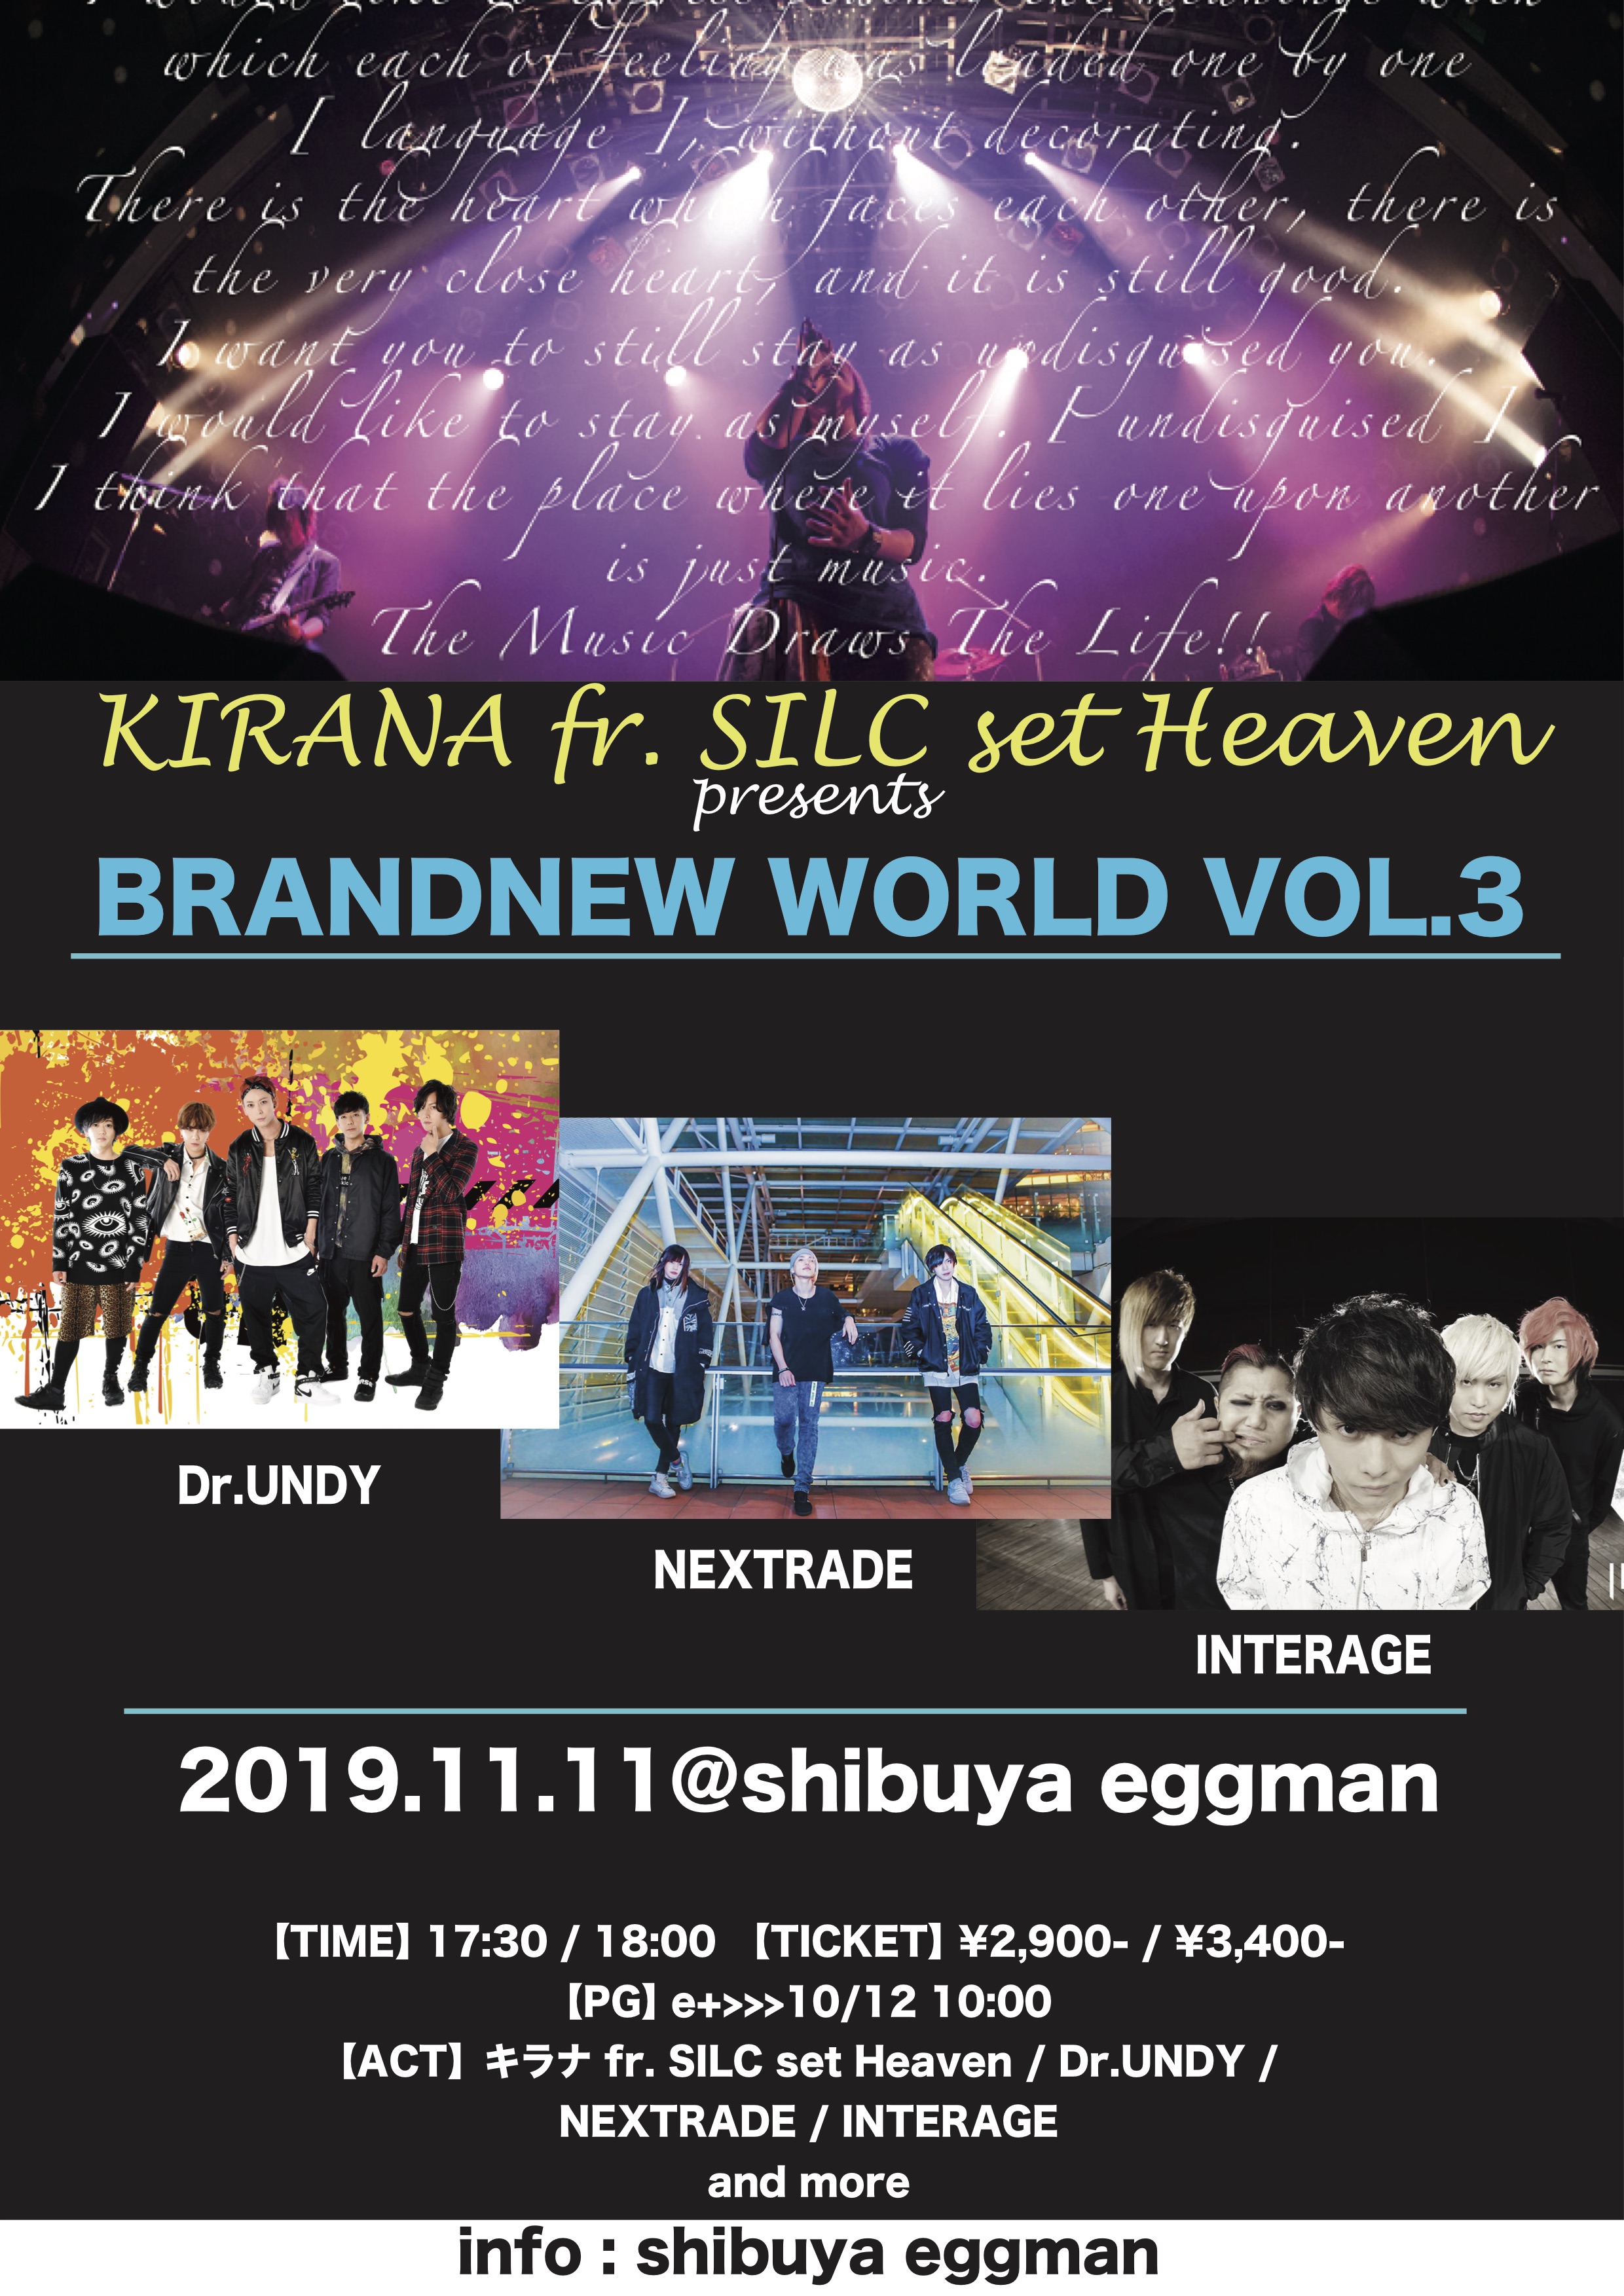 キラナ fr. SILC set Heaven presents BRANDNEW WORLD Vol.3